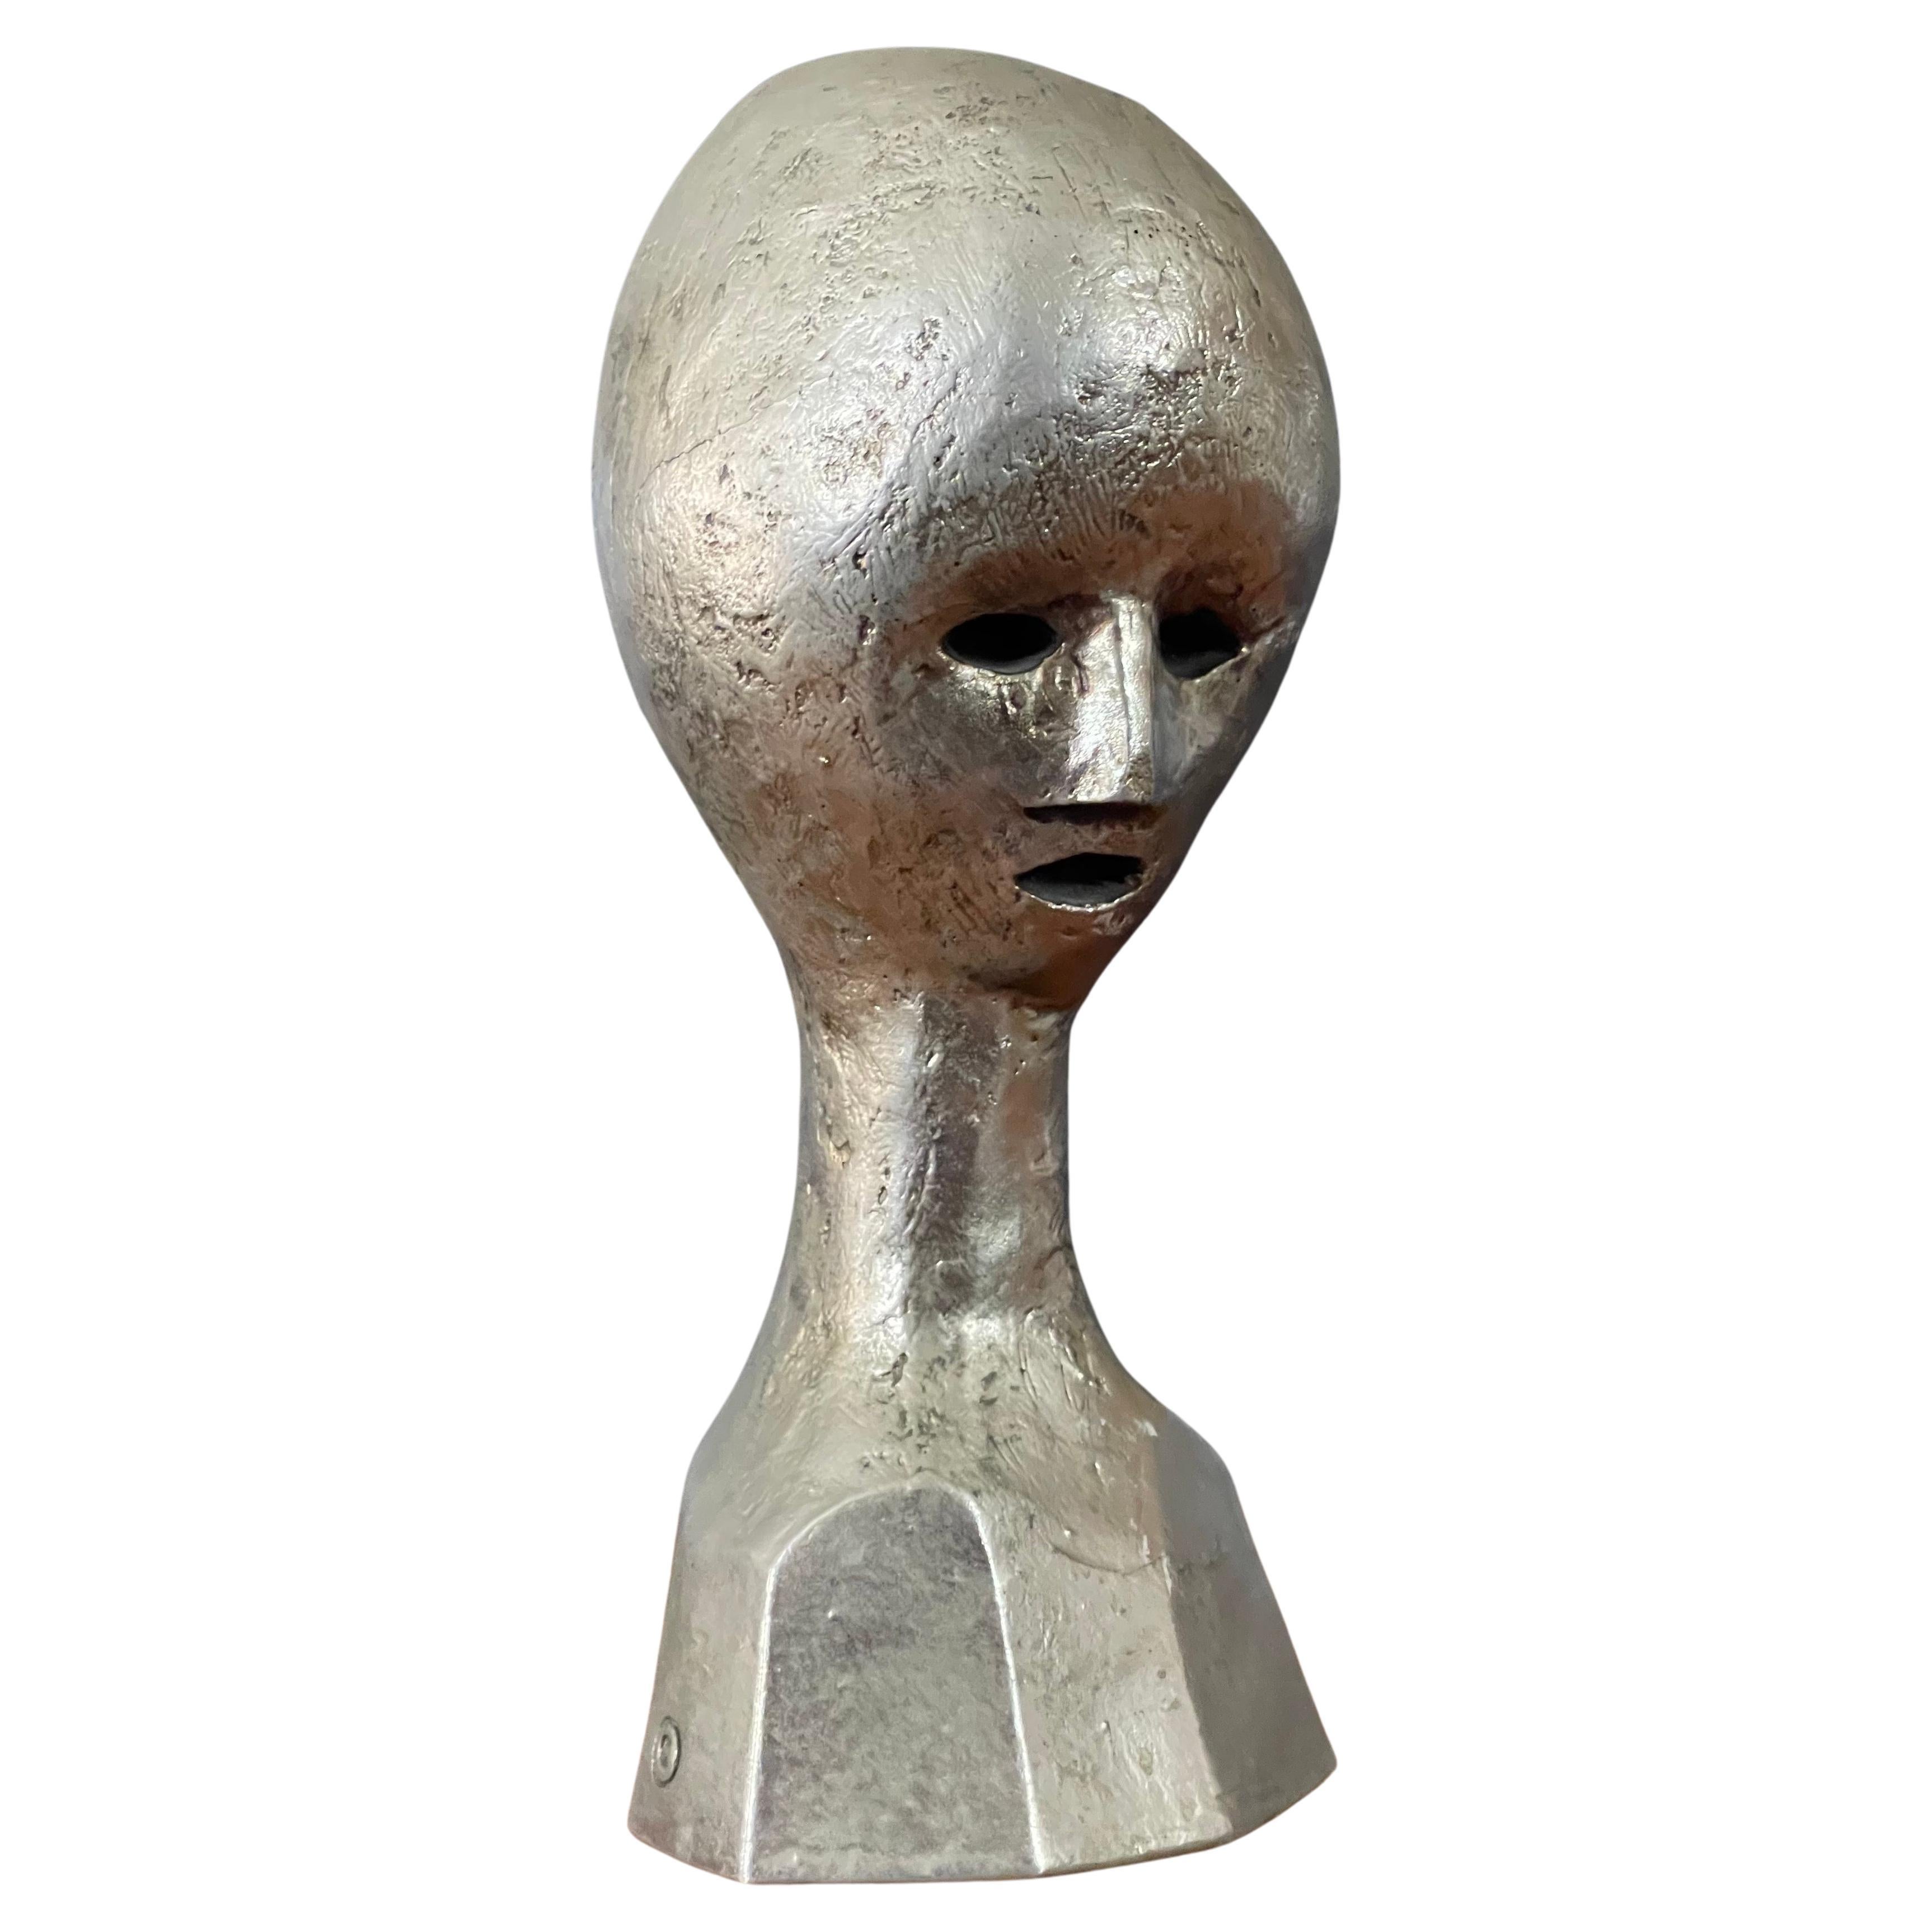 Eine sehr coole MCM modernistische Alienbüste / Kopfskulptur von Andre Minaux, circa 1970er Jahre. Diese seltene Skulptur des bekannten französischen Designers Andre Minaux ist aus gegossenem Metall über Bronze mit einer Silberwaschung Oberfläche